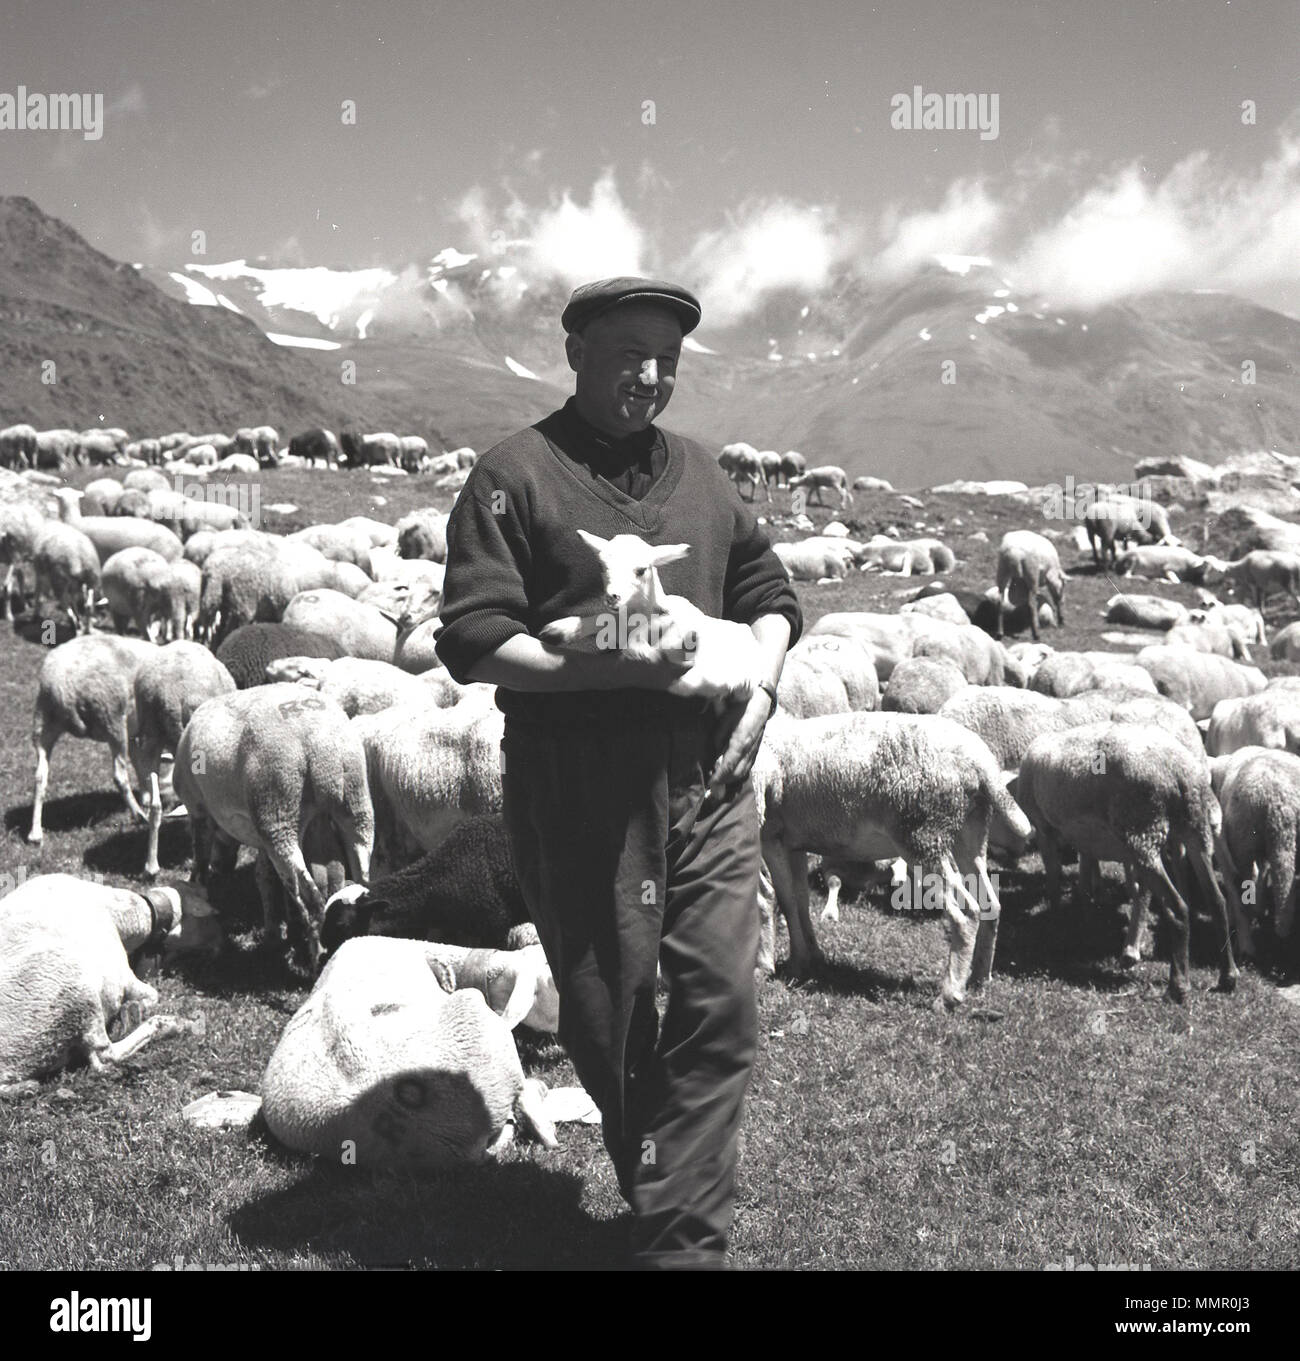 Degli anni Cinquanta, foto storiche del Principato di Andorra un pastore con il suo gregge di pecore al pascolo sulle pendici della collina in montagna dei Pirenei, Andorra. L'ambiente naturale e l'aria alpina deve essere buona per i popoli indigeni come secondo uno studio del 2013, la popolazione di Andorra hanno avuto la maggiore aspettativa di vita nel mondo. Foto Stock